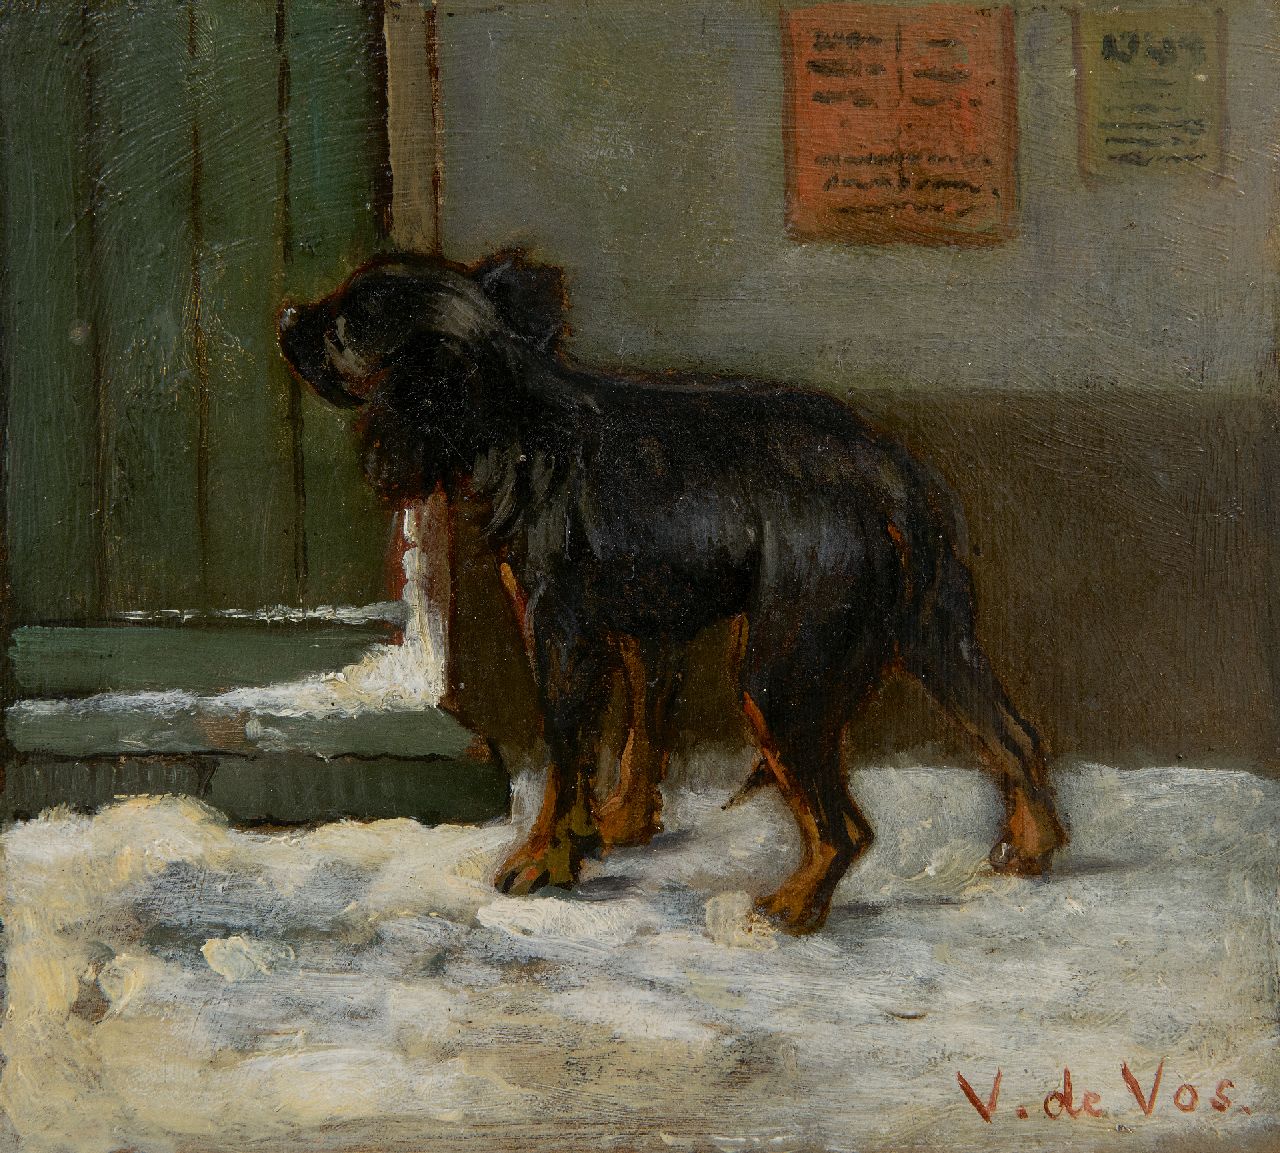 Vincent de Vos | Op de bestemming aangekomen, olieverf op doek, 15,6 x 17,1 cm, gesigneerd r.o.